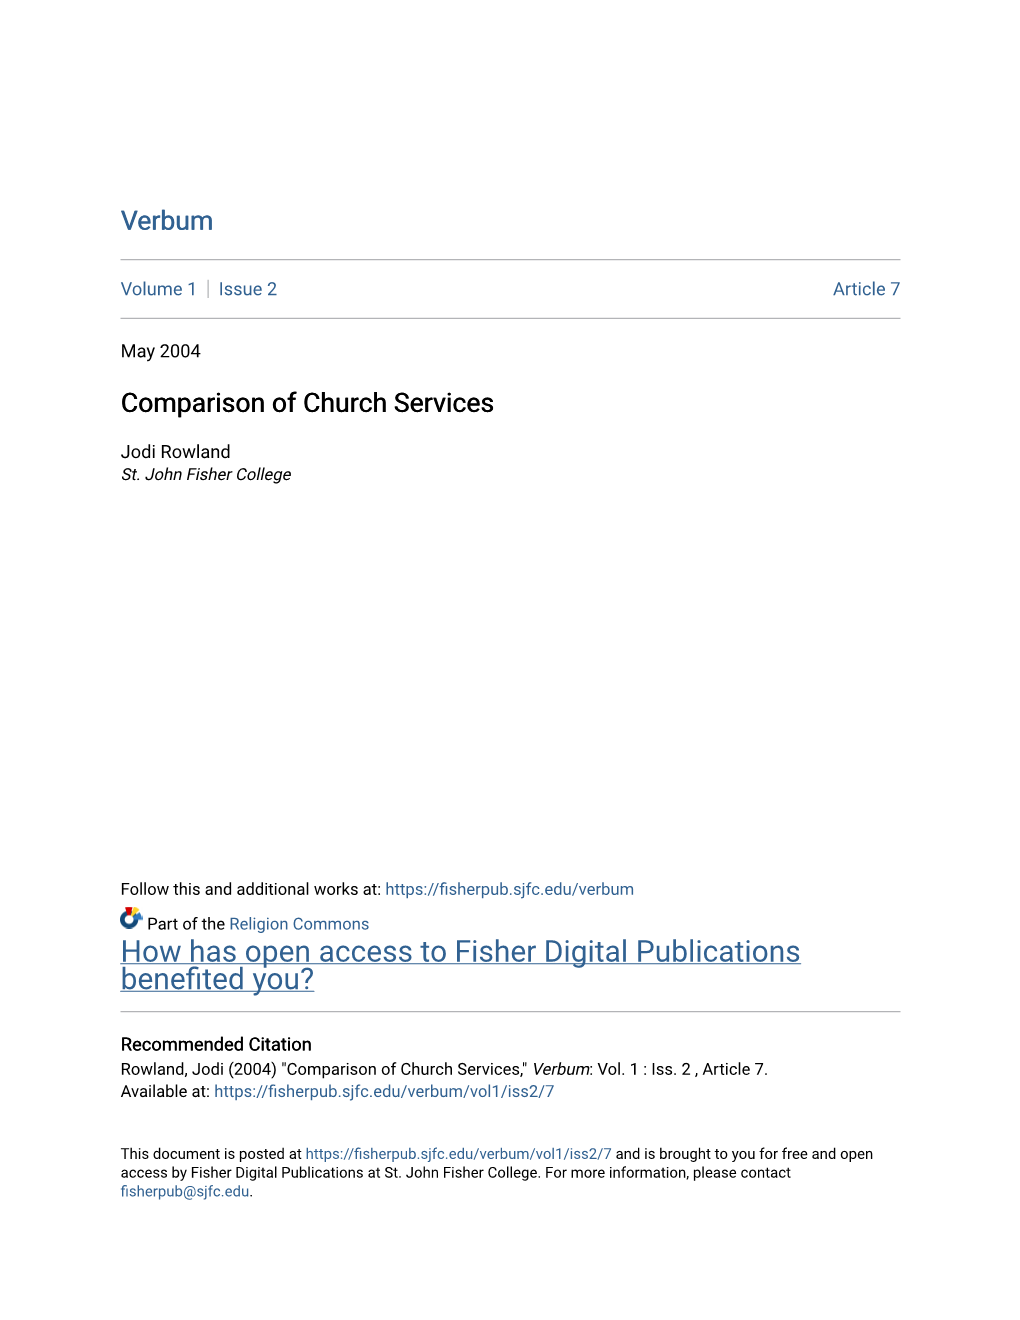 Comparison of Church Services